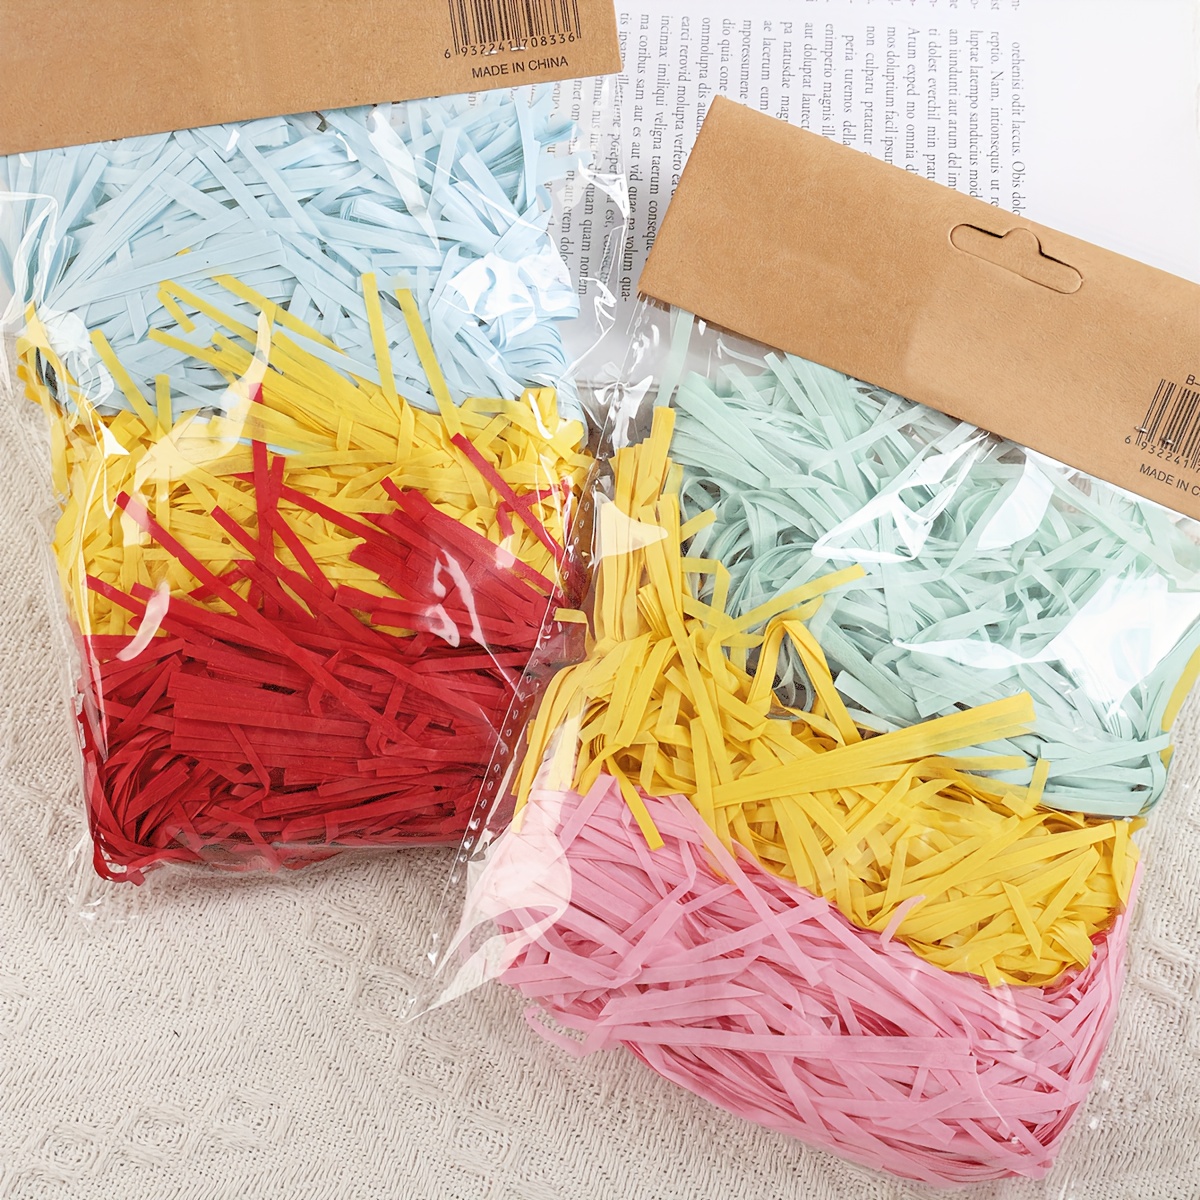 Coral or Salmon Color Shredded Paper Gift Bag Filler